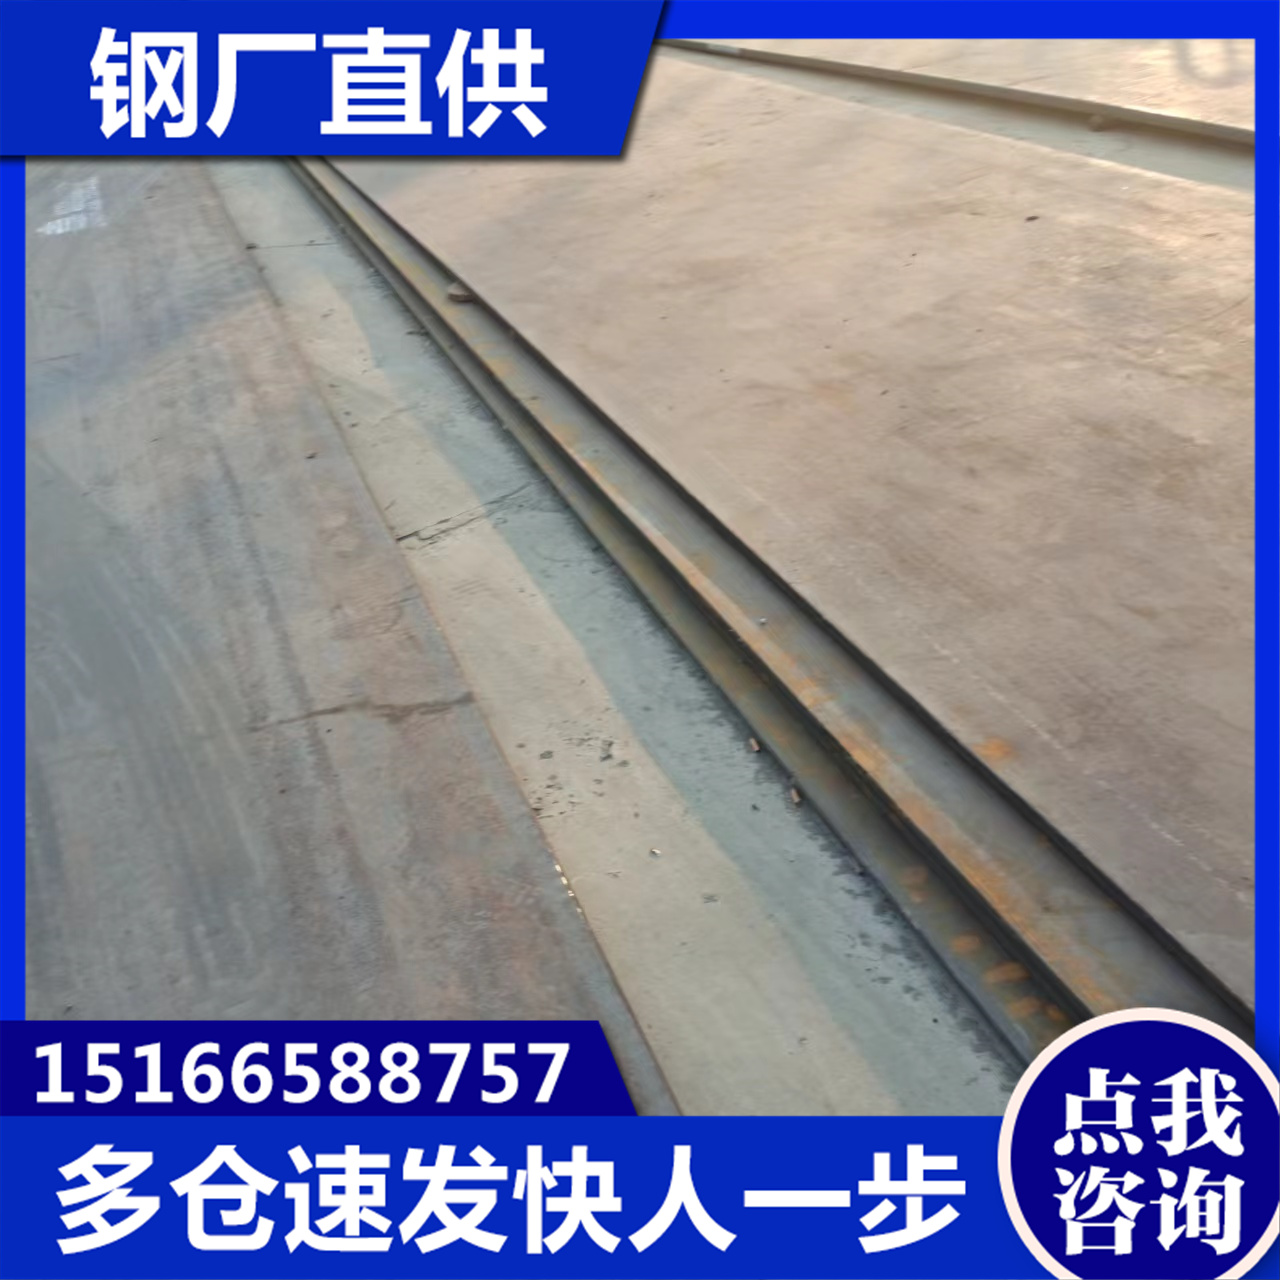 昊鲁钢铁 梅/州q390b钢板 快速发货，不误工期 多种加工车间